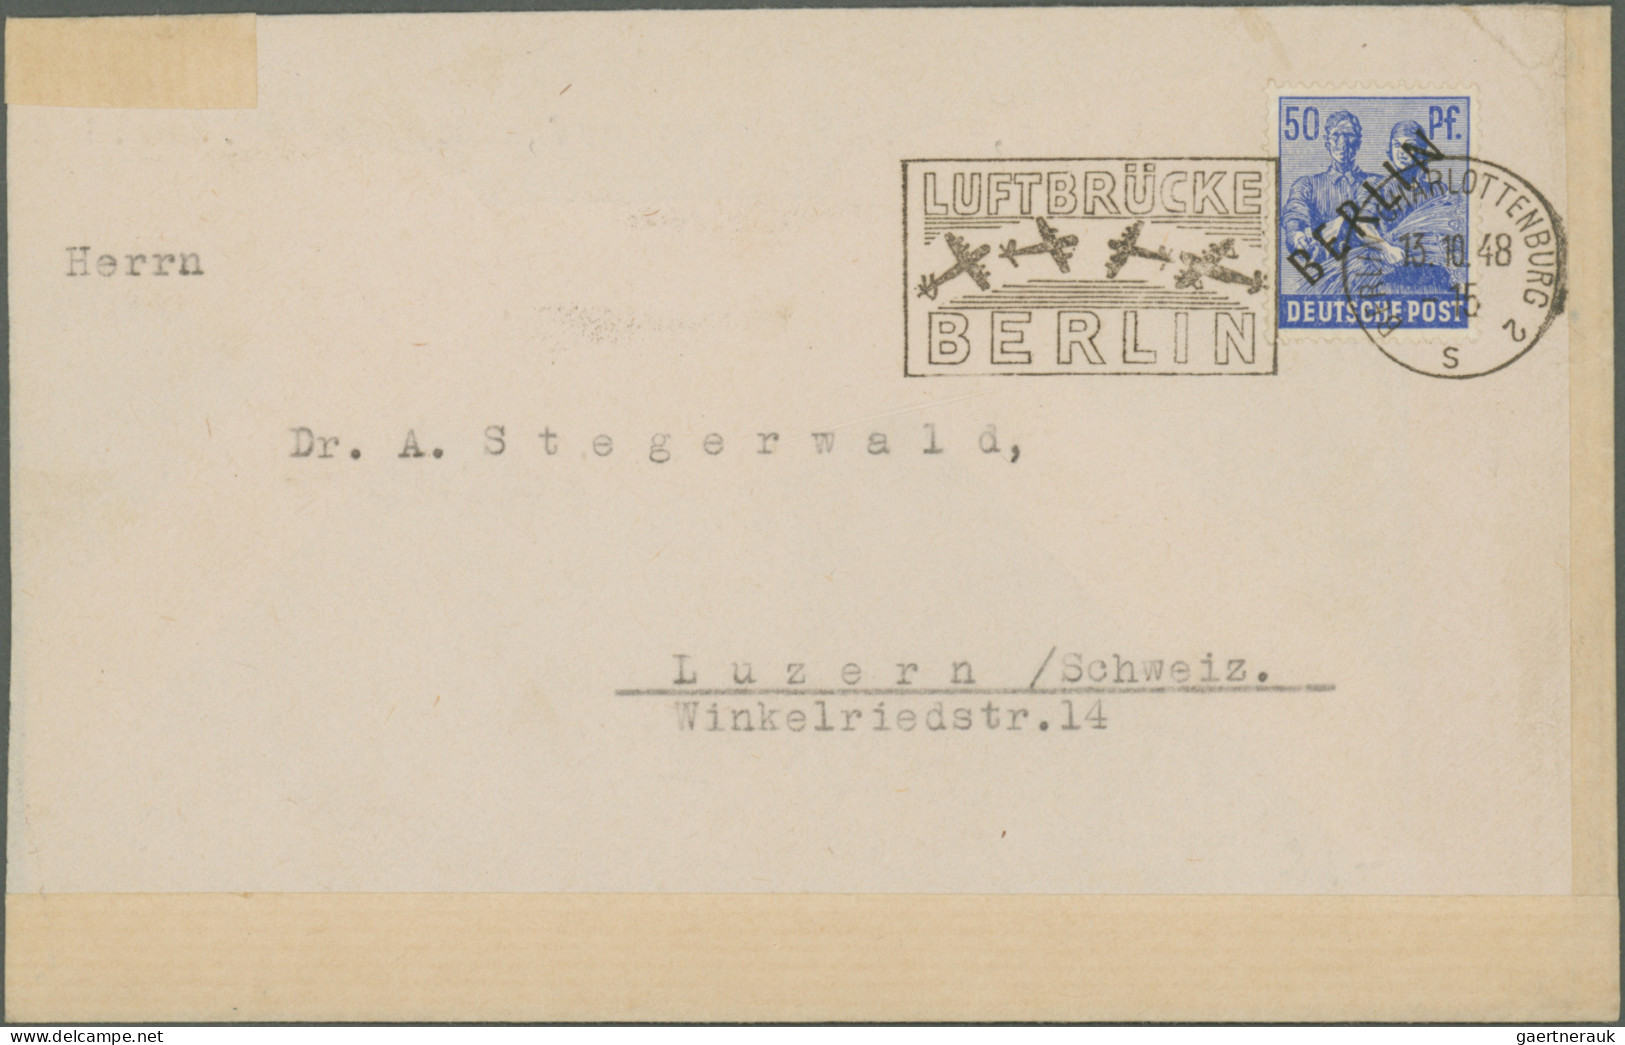 Berlin: 1948/1959, nette Partie von ca. 73 Briefen und Karten mit nur mittleren